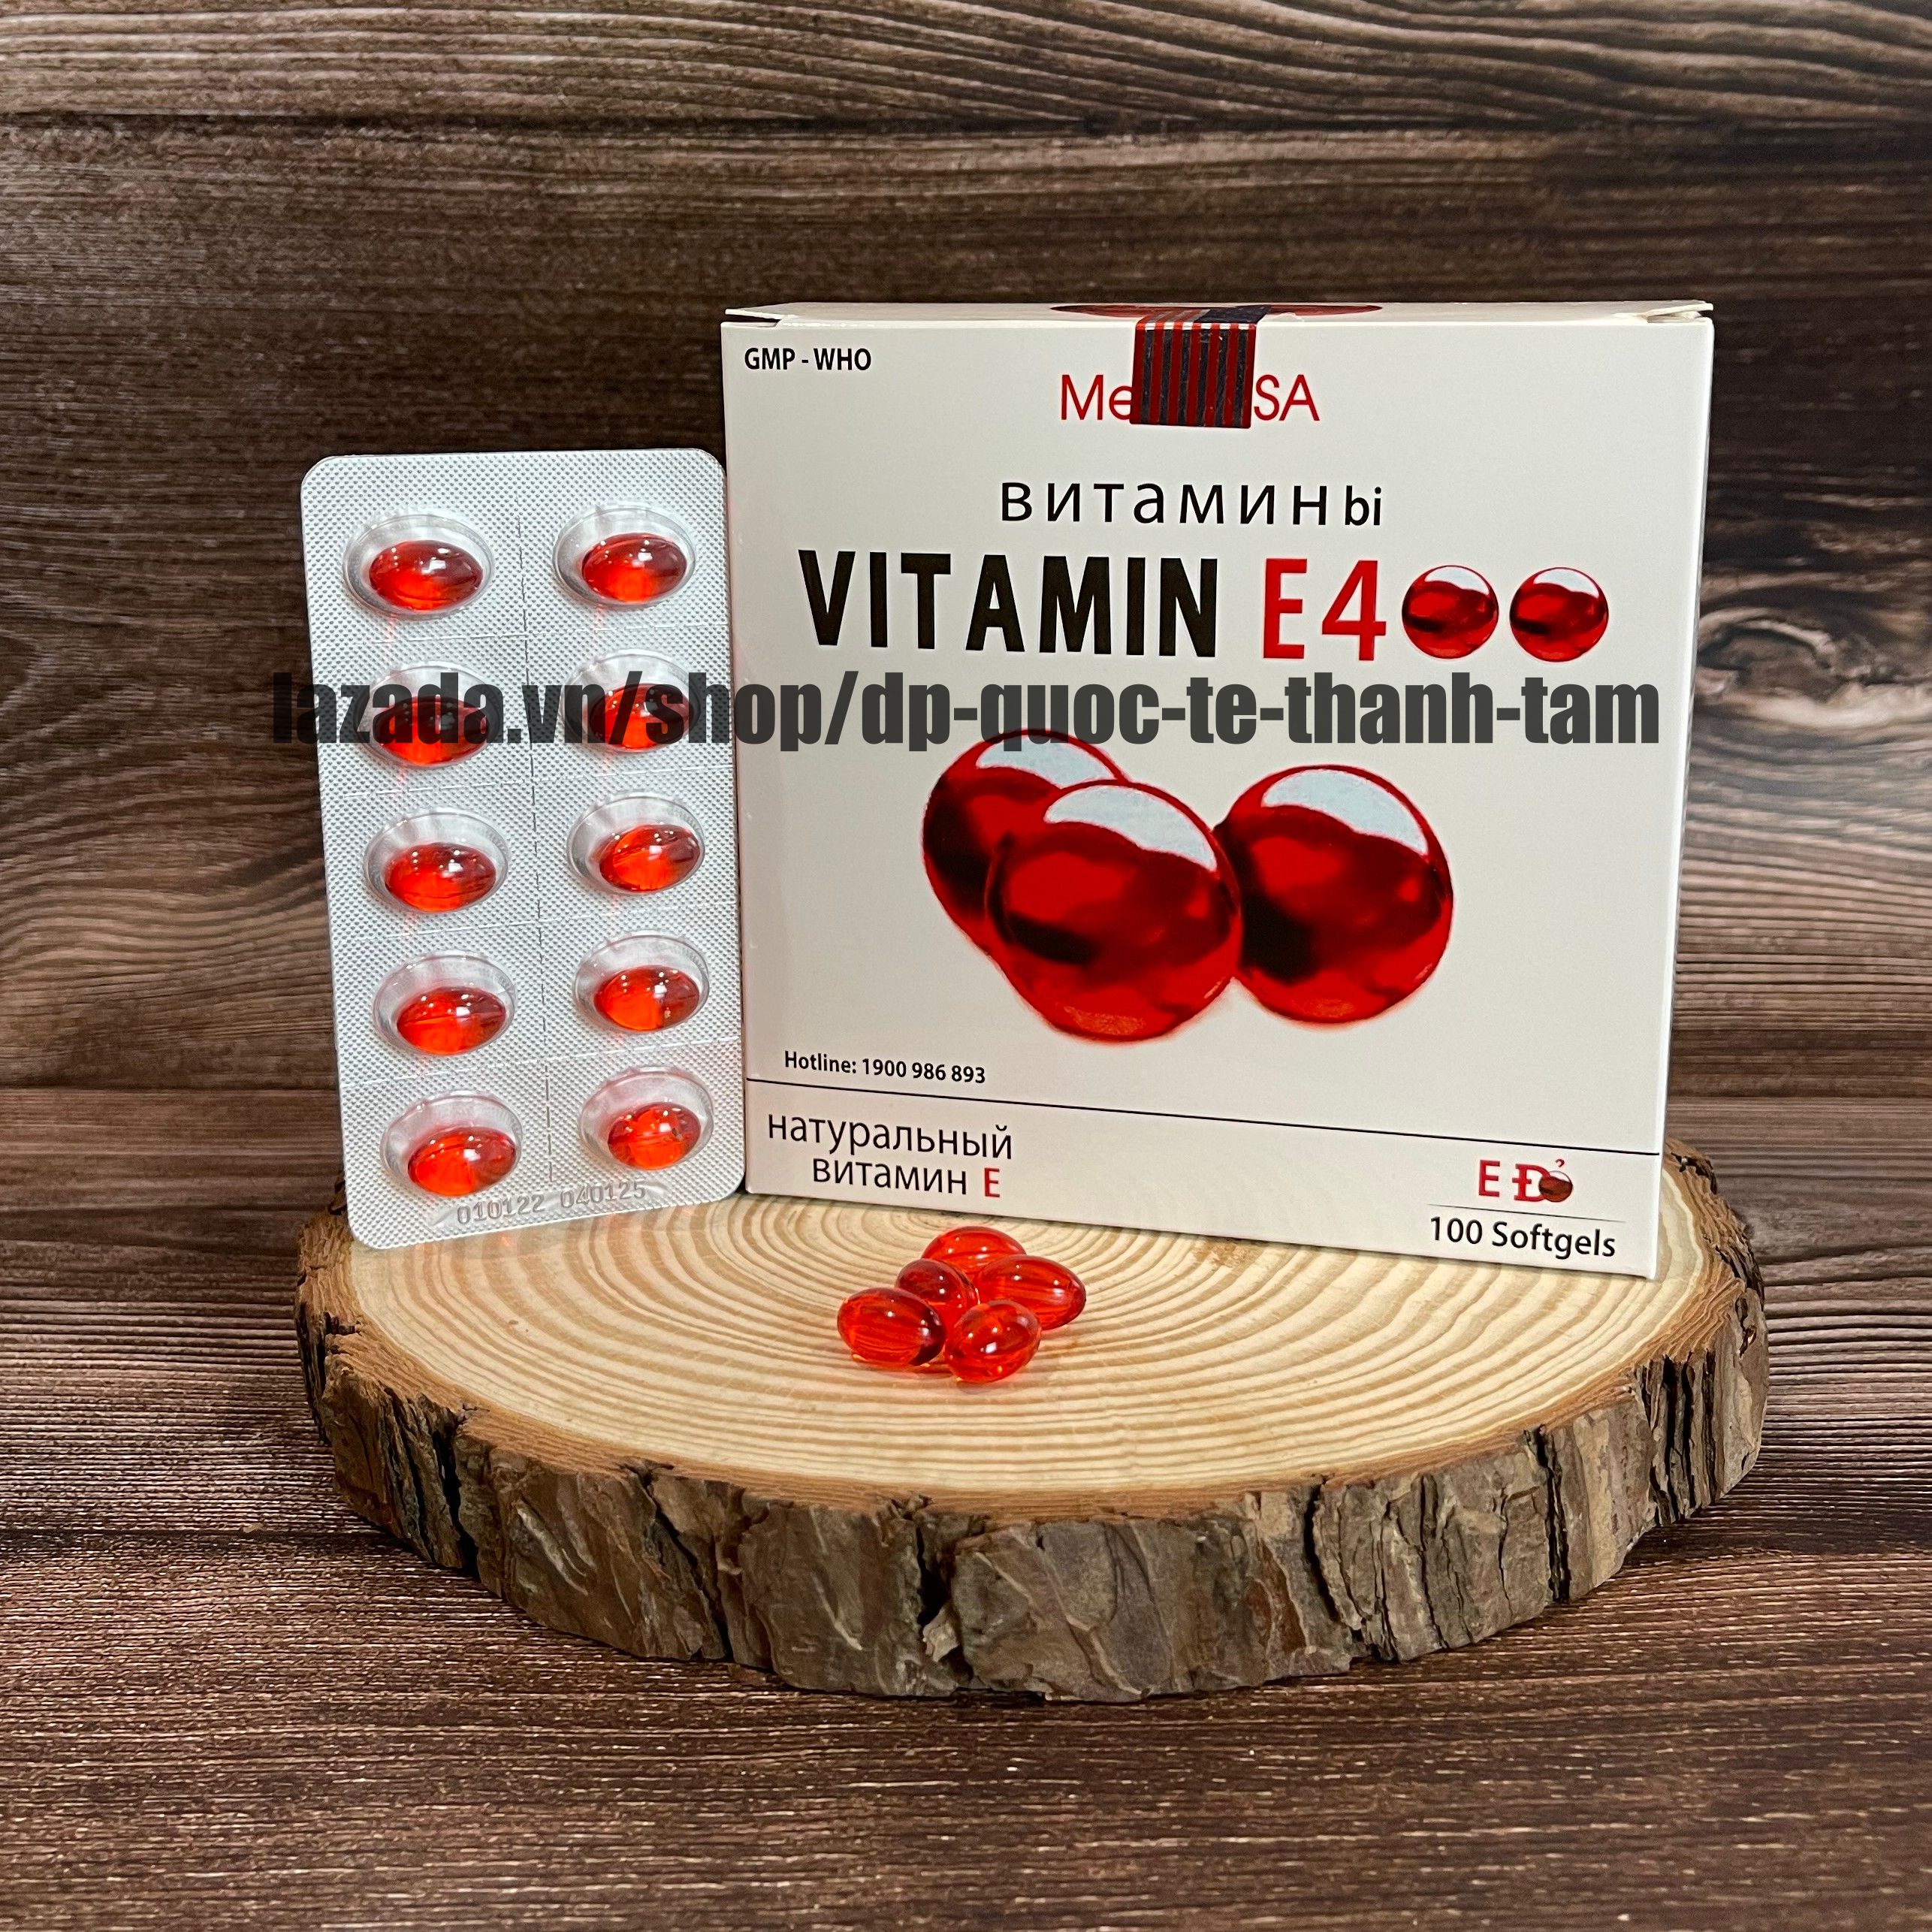 Viên uống đẹp da Vitamin E đỏ bổ sung tinh dầu vitamin e 400 giúp làm